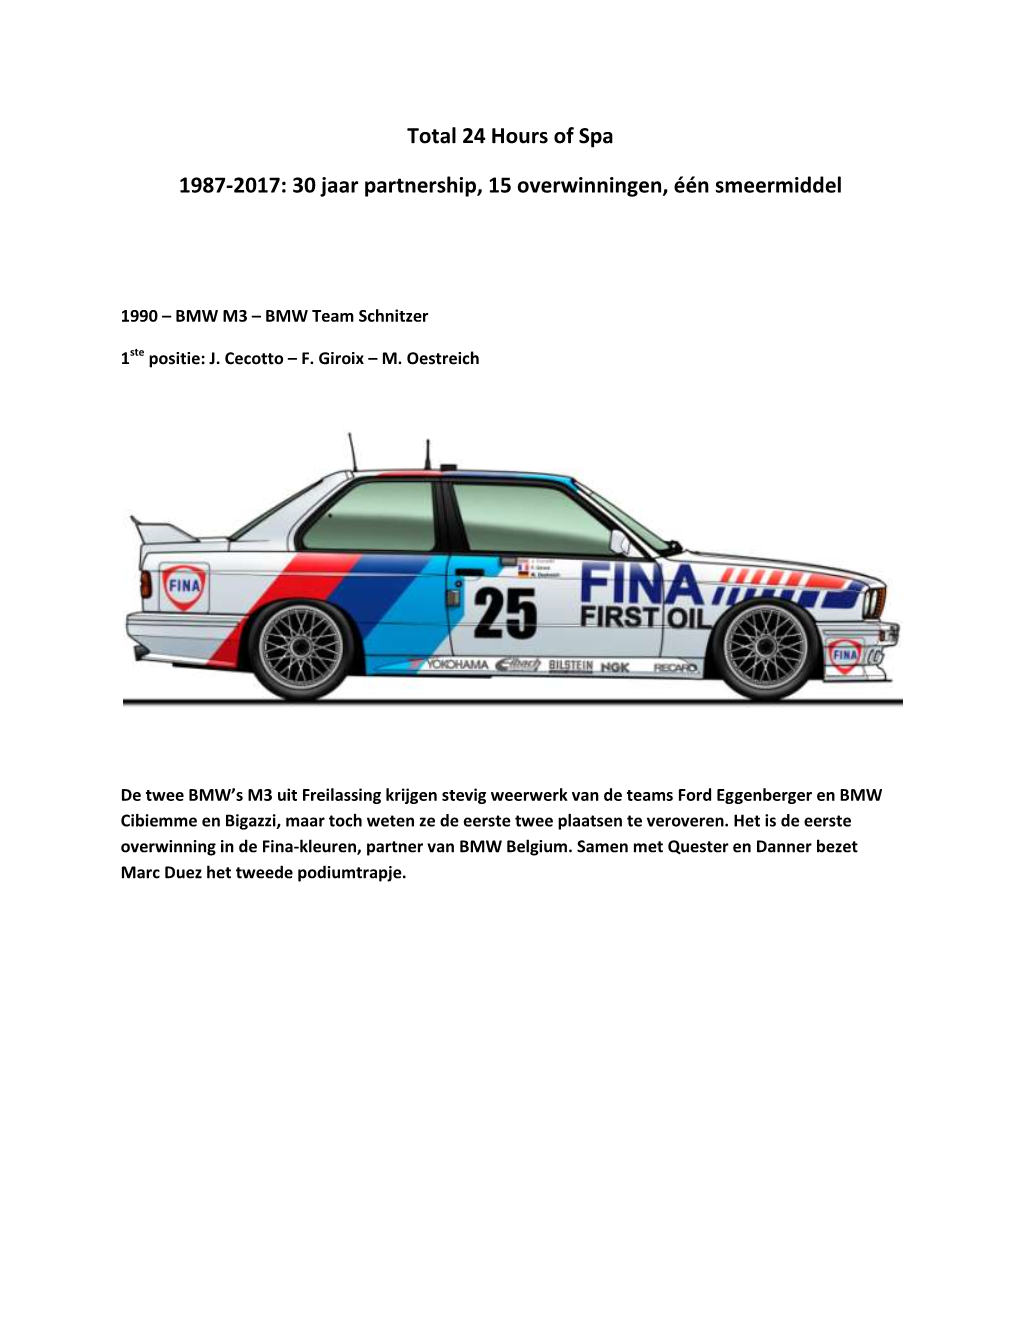 Total 24 Hours of Spa 1987-2017: 30 Jaar Partnership, 15 Overwinningen